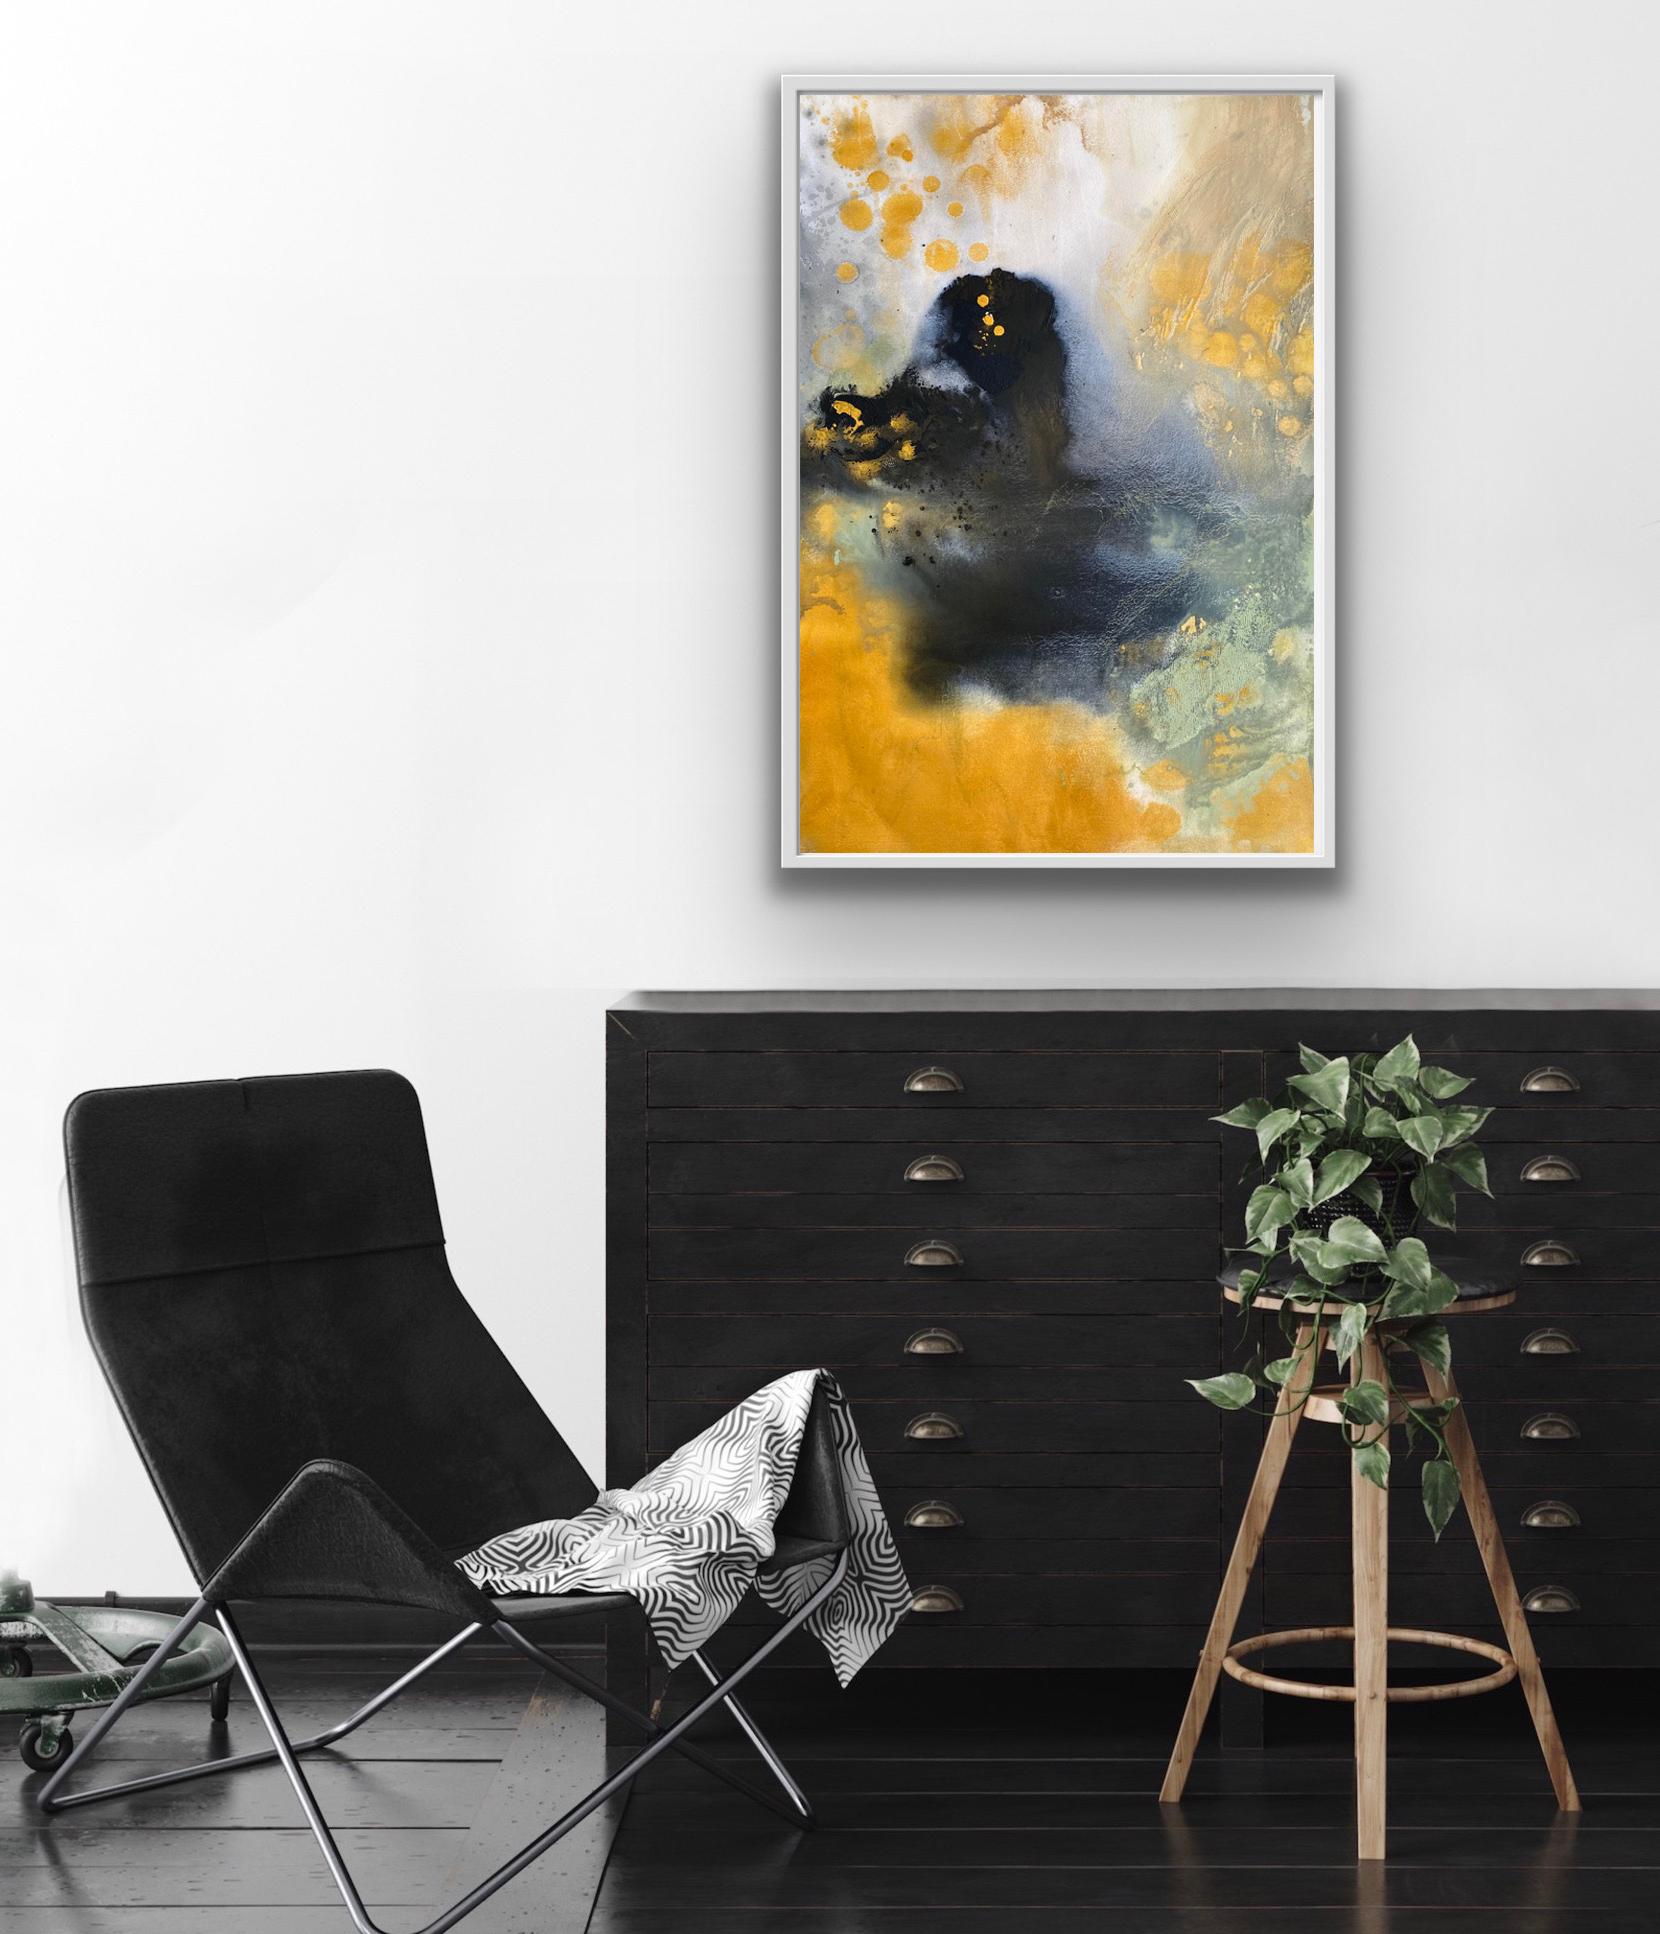 Suchen Sie die Eleganz von klassischem Schwarz und Gold in dieser abstrakten expressionistischen Collection'S. Ein auffallend einzigartiges Kunstwerk, gemalt auf hochwertigem Aquarellpapier. Farbschichten, Pinselstriche, Flecken und Spritzer